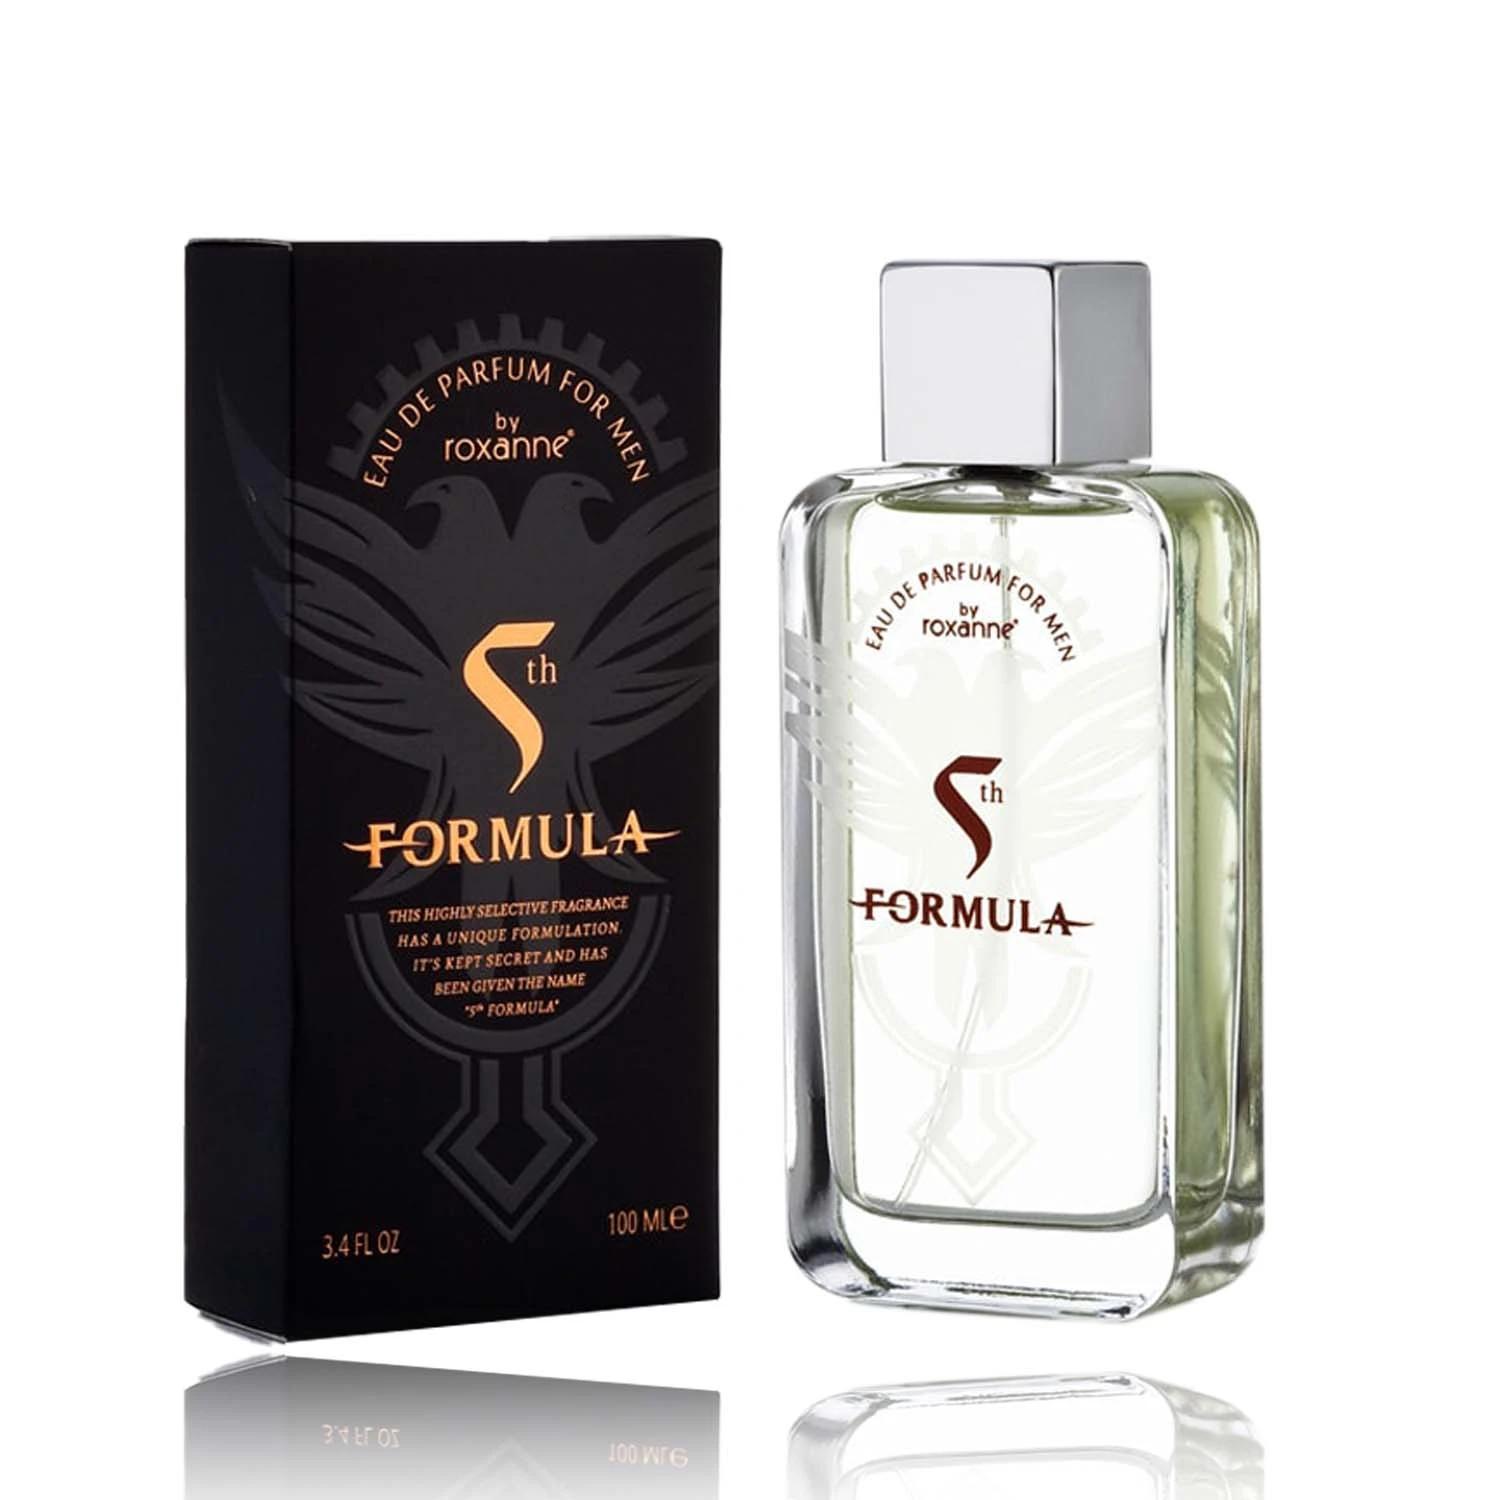 Roxanne 5th Formula Eau De Parfum For Men 100 ML